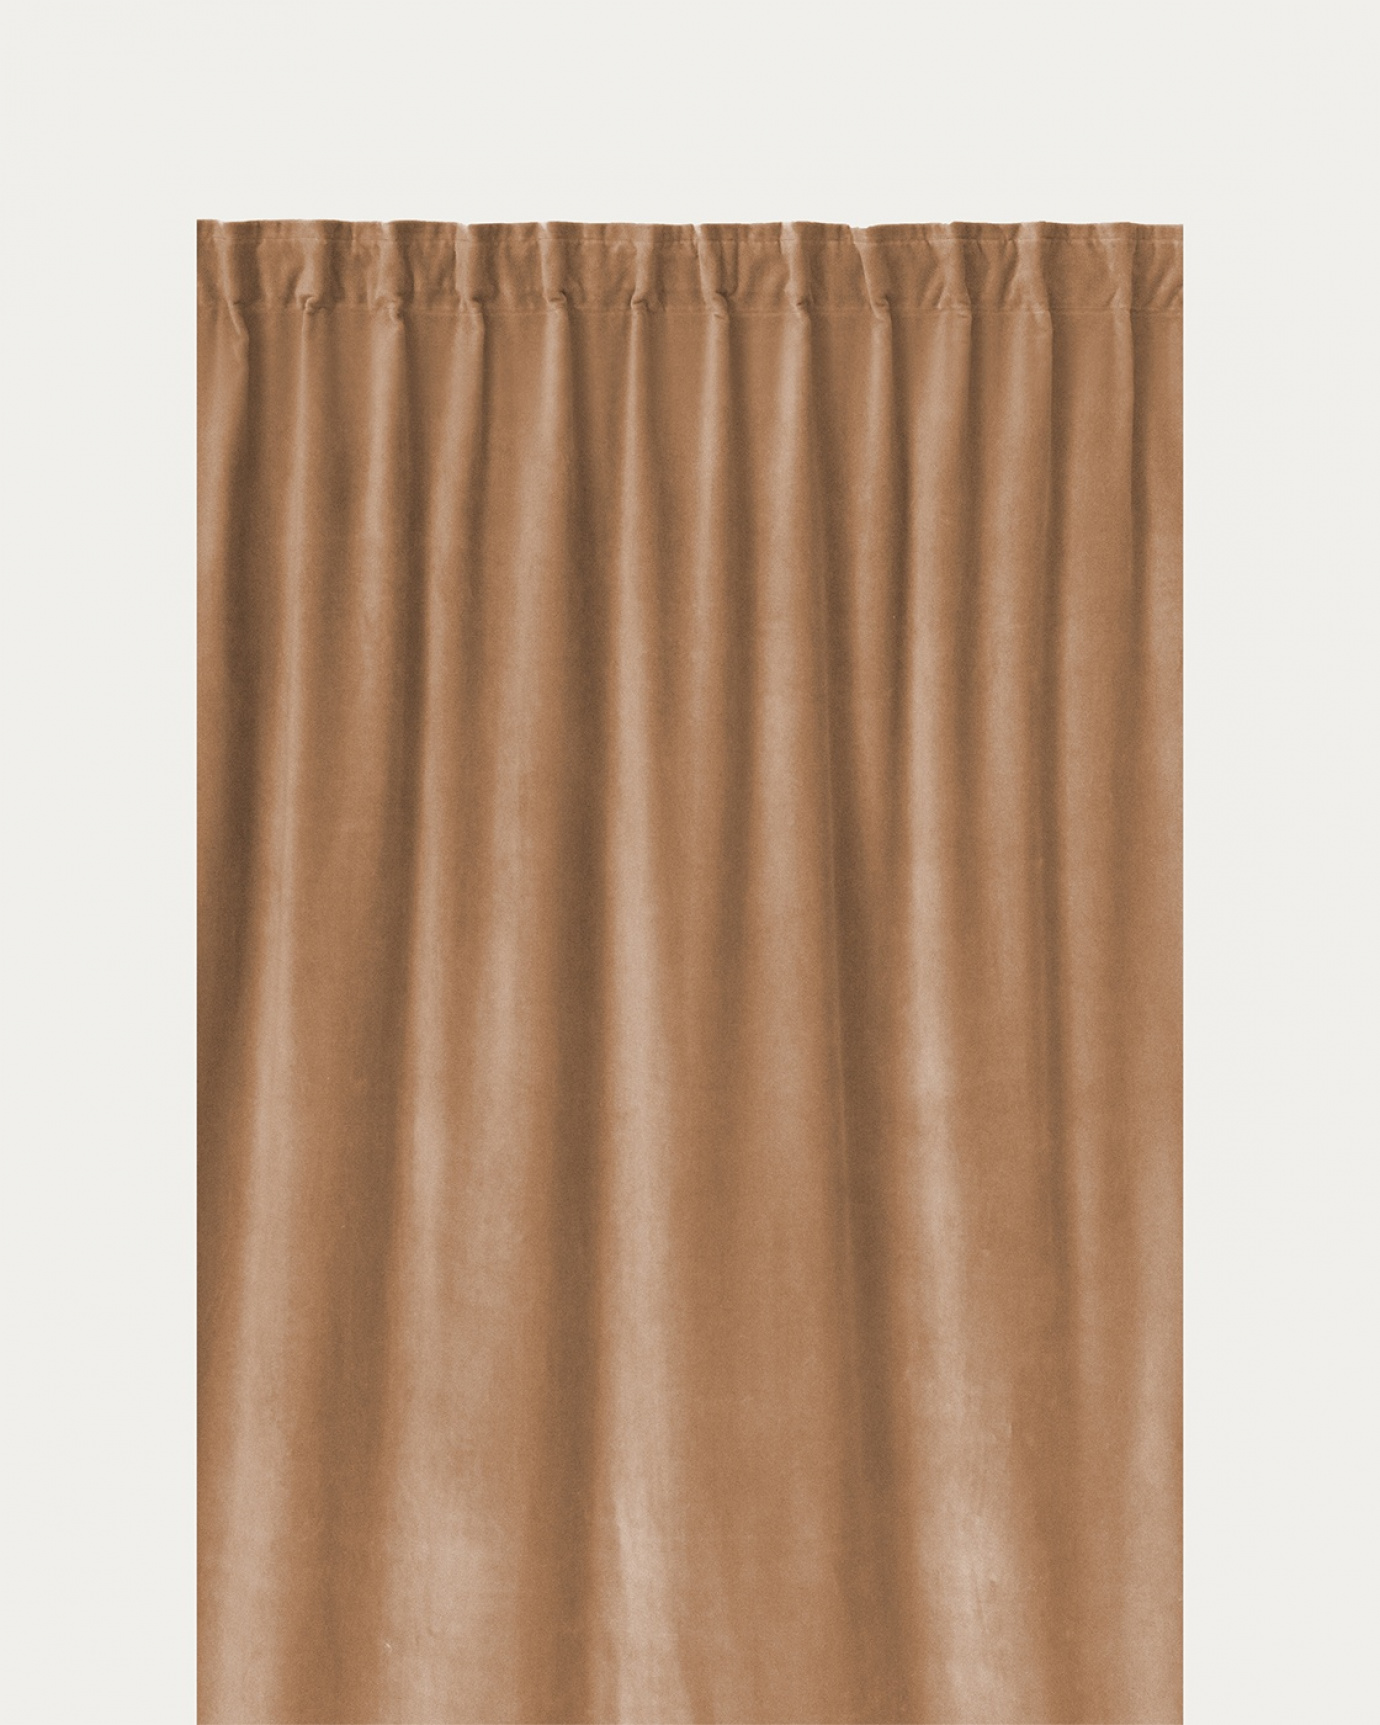 Produktbild kamelbraun PAOLO Gardine aus Baumwollsamt mit Fertigfalten von LINUM DESIGN. Größe 135x290 cm und in 2er-Pack verkauft.